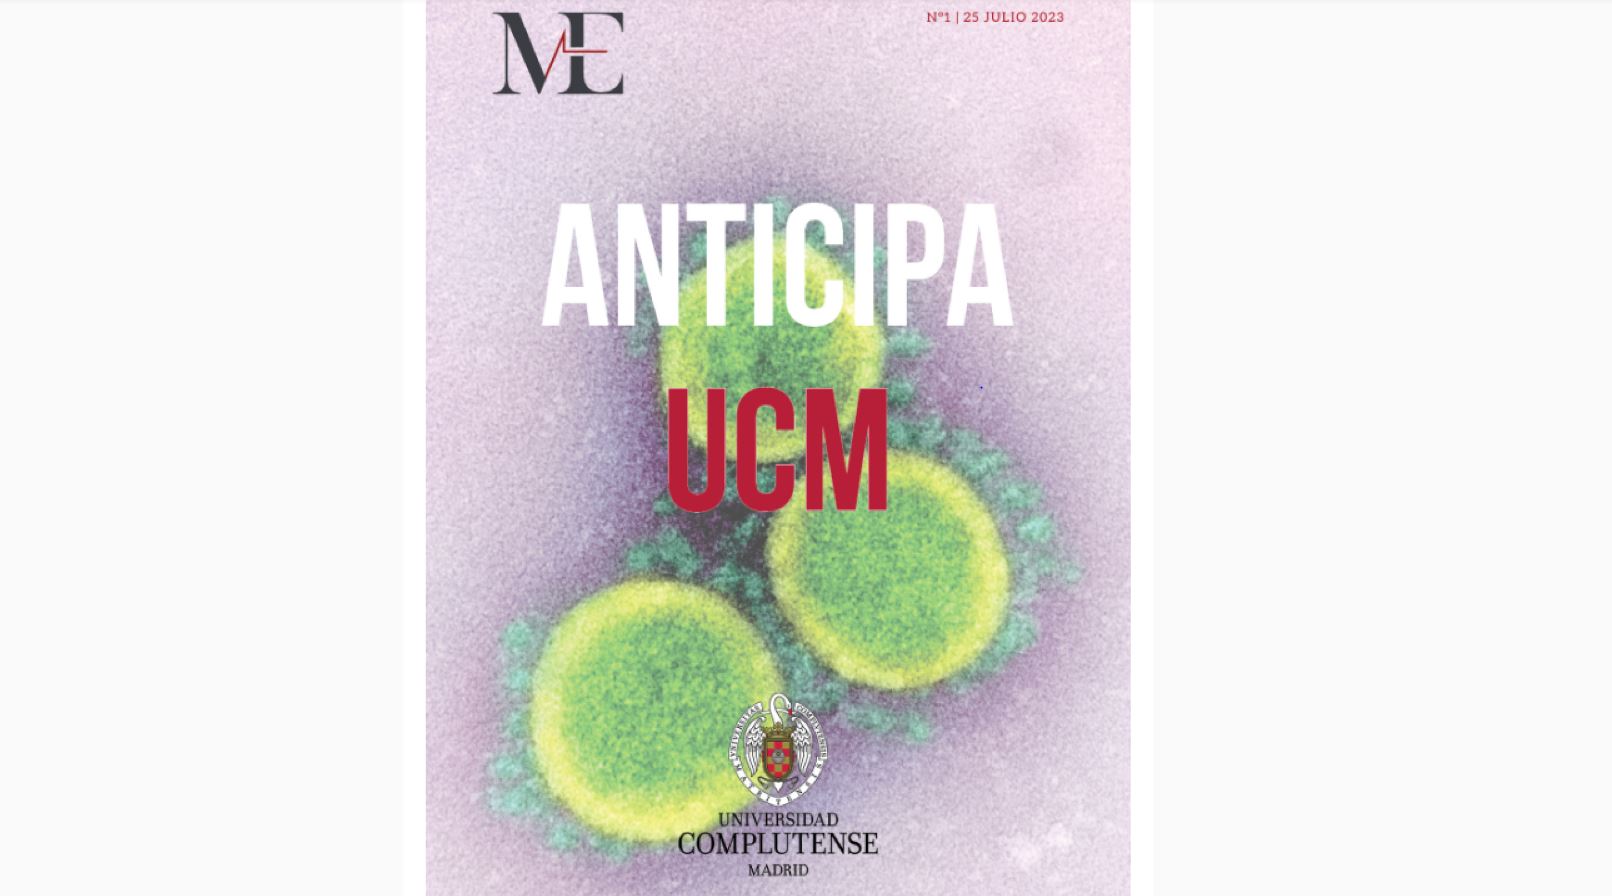 Publicación del primer número de NEW MEDICAL ECONOMICS con el programa de investigación ANTICIPA UCM.